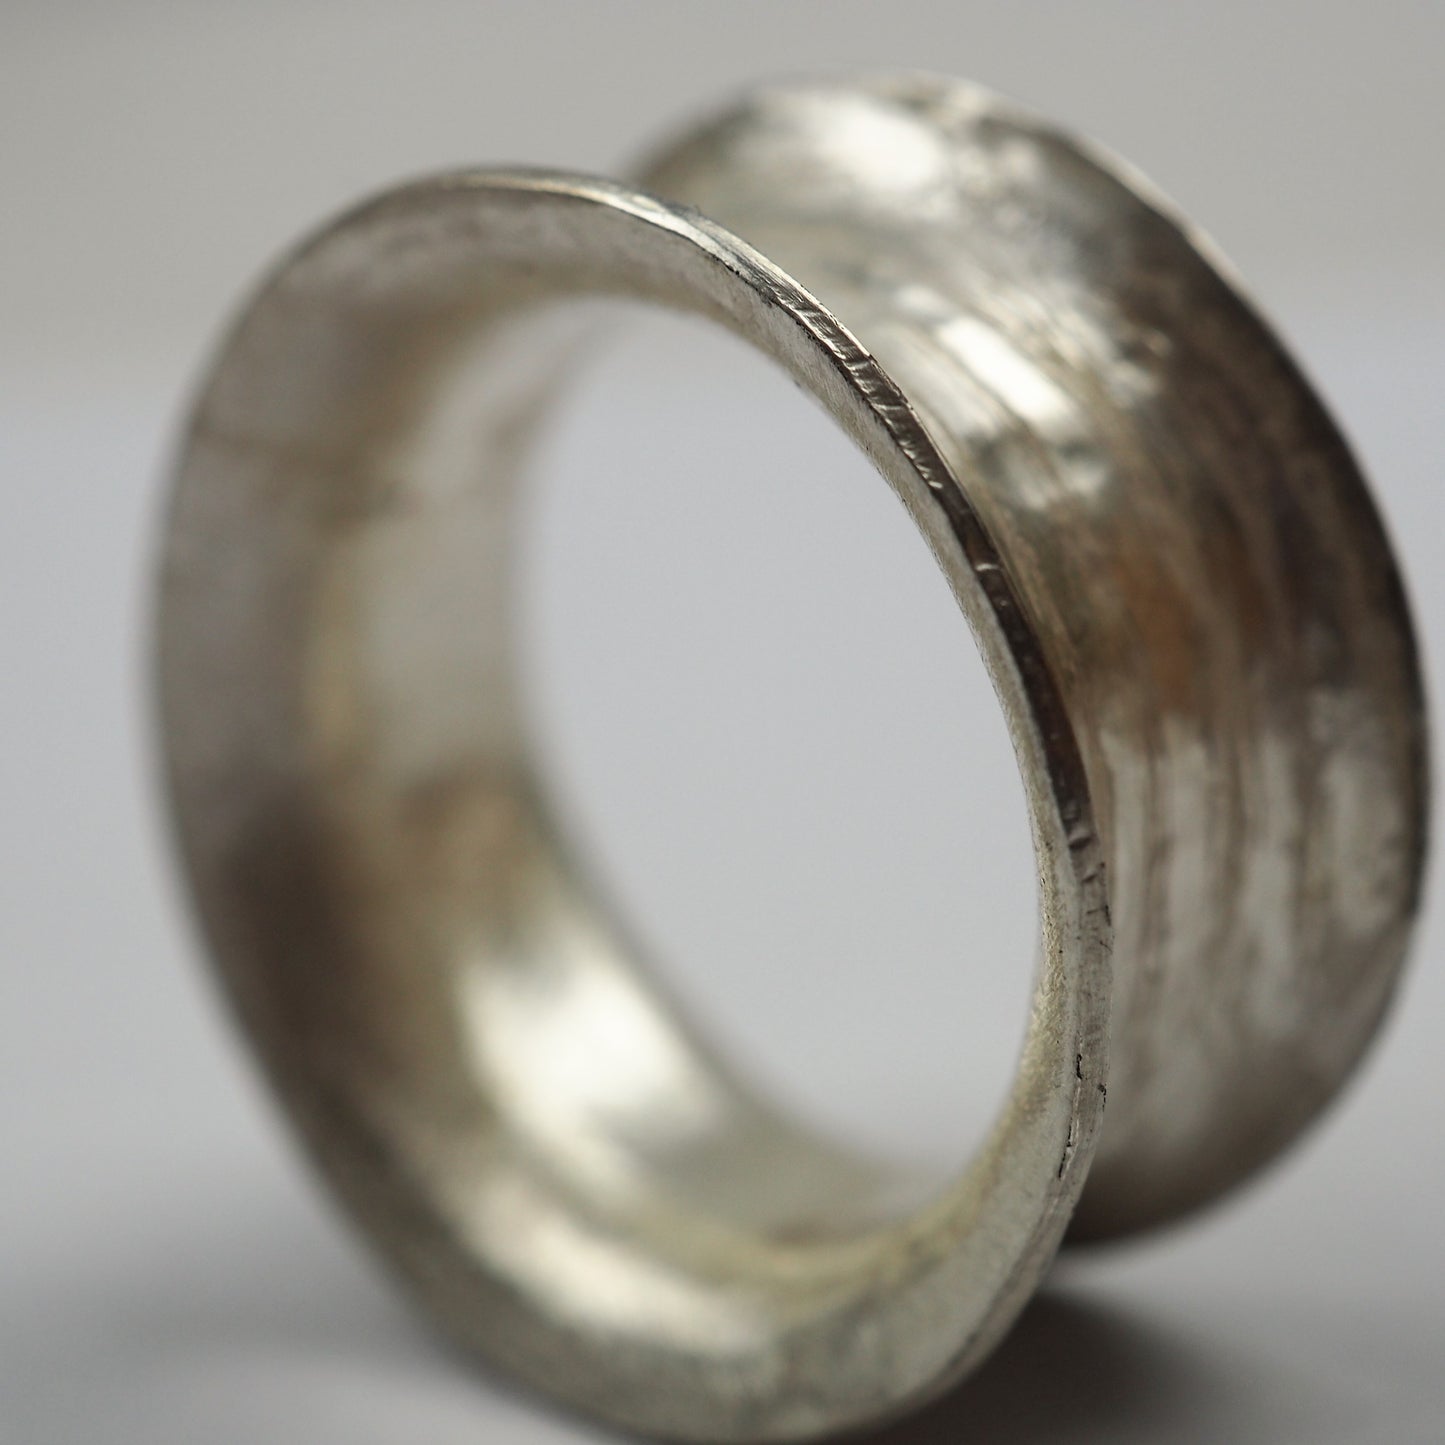 Ilett, Rebecca - Silver Ring